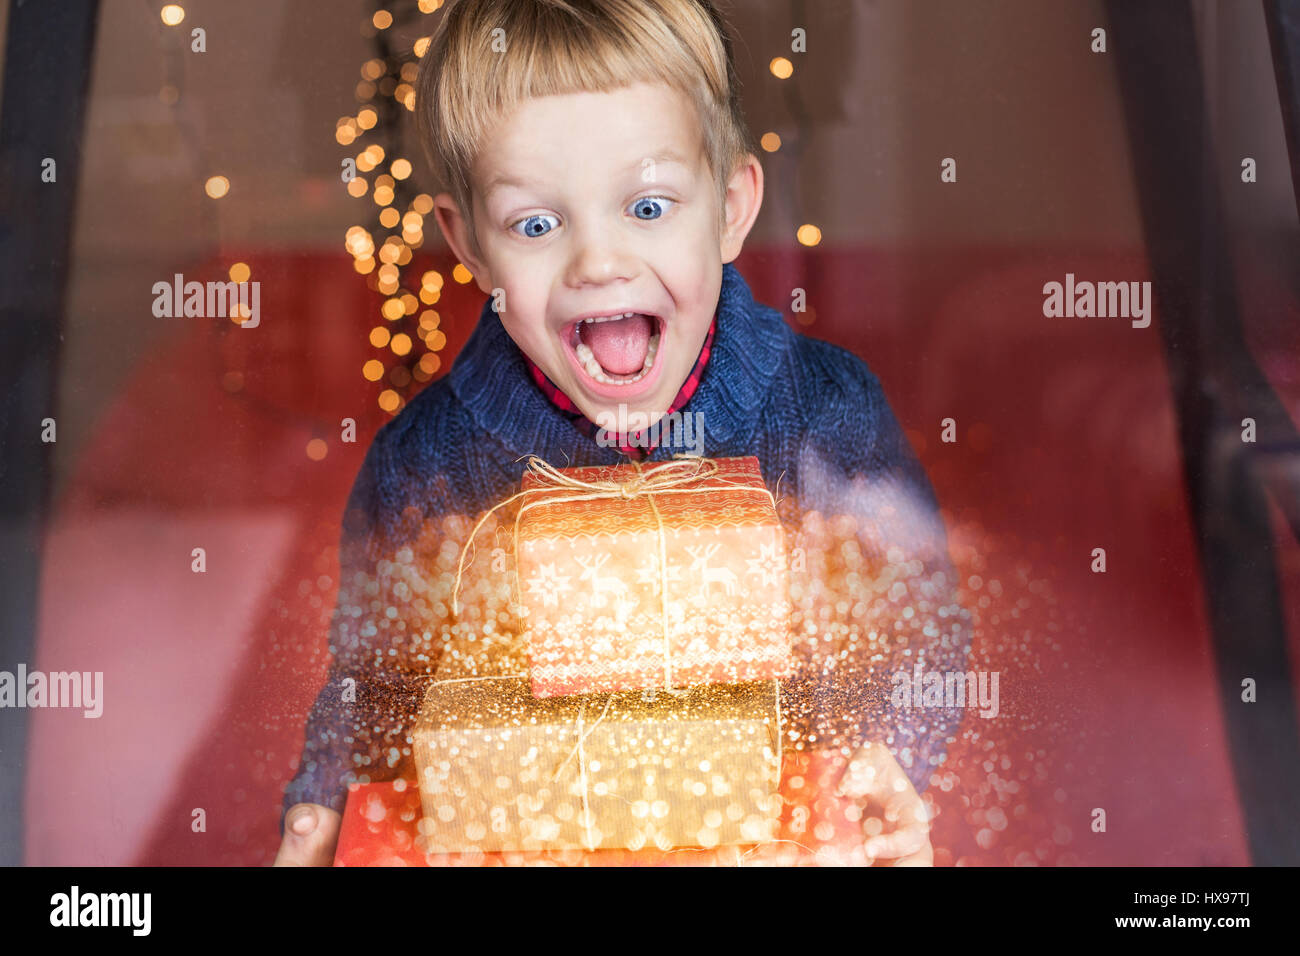 Porträt eines glücklichen kleinen Jungen hält ein neues Geschenk. Weihnachten. Geburtstag Stockfoto